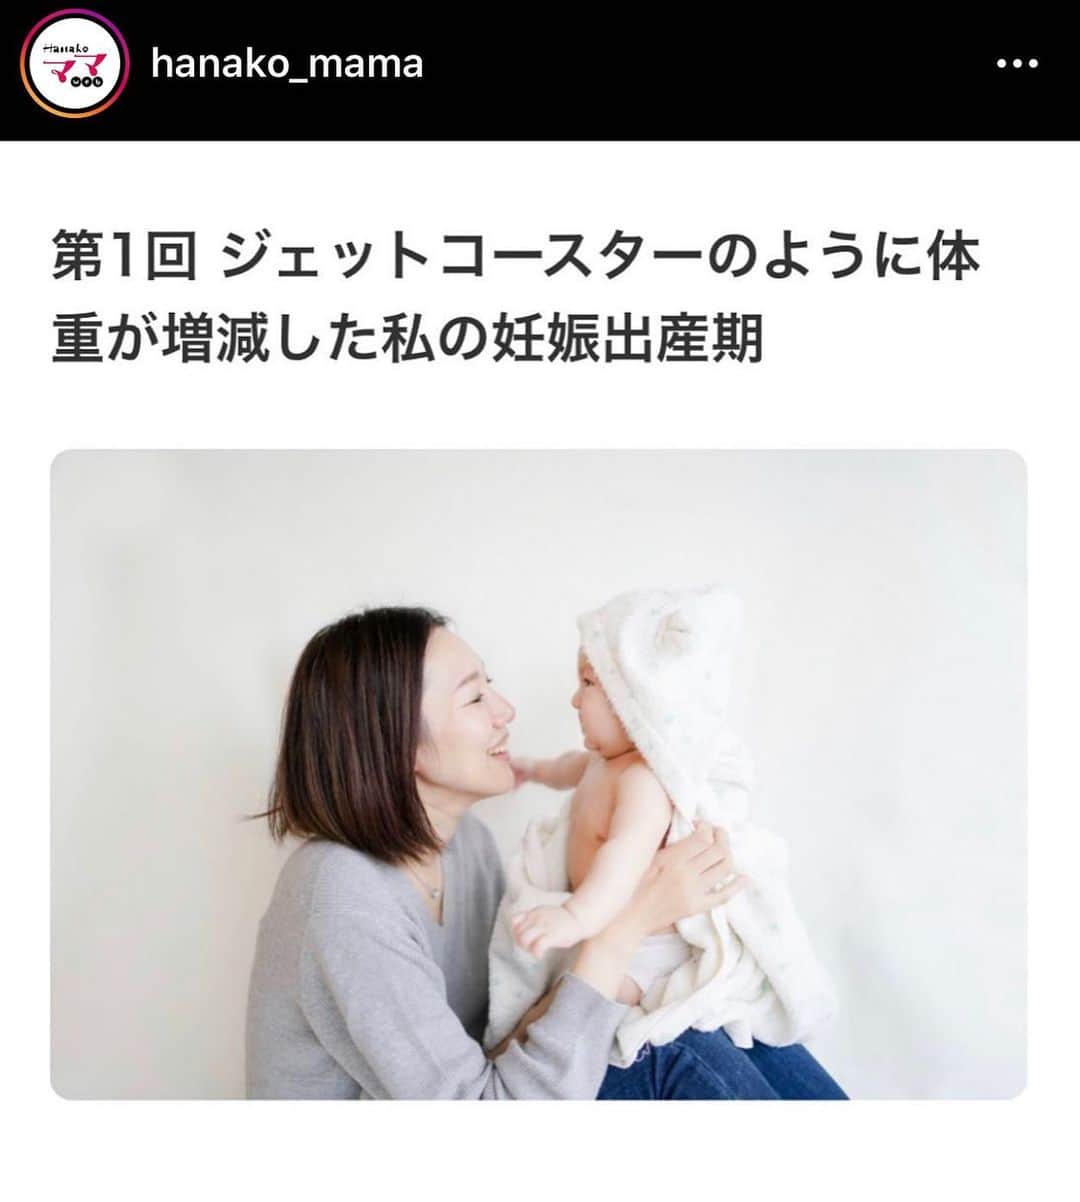 ダイエットコーチEICOのインスタグラム：「Hanako ママ　@hanako_mama にて「EICOママのラクやせメソッド」という連載がスタートしました。  子育てママのお悩み解決メディアのHanakoママ。  私の記事は月に２回の更新です。 ウェブでは、チュートリアルの福田さんのパパエッセイ、藤本美貴さんのママエッセイ、駐妻さんの海外育児日記や子供のメディアリテラシー教育についてなど興味深いものがたくさん。  読み応えがあるものばかり！  さて、私の初回のお話は、  「ジェットコースターのように体重が増減した私の妊娠出産期」  hanakomama.jpか「Hanako ママ」で検索を。  妊娠中体重が人生初の７４キロ！！！ そうなるまでのエピソードや生活が変わったことなど赤裸々に書いてあります。  実は、子供が生まれる前と後でダイエットの考え方とやり方が変わりました。 子供がうまれる前は行動制限がなく、外で働くので外食中心。 運動はウォーキングがメインでしたが、今は毎日ウォーキングの時間を取ることはできません。 お風呂も30分つかるなんてできません。 特に最近は新型コロナウィルスの影響で外出の機会がぐっと減りました。 ウィズコロナの中でもできるダイエット。 生活がガラッと変わった方もいらっしゃると思います。  いろんな制限のある中で、家電やアイテムをうまく使ってできる時短ダイエット。  この連載ではその方法を公開しようと思っています。 ぜひ読んでみてください。 ママ以外にも、仕事で忙しくて時間がとれない方にもおすすめ。  どうぞよろしくお願いいたします。  #ダイエット　#ダイエットメニュー  #ママダイエット　#hanakoママ #hanakoママweb  #新連載　#ダイエット情報 #ダイエットアカウント #ダイエット仲間募集中」